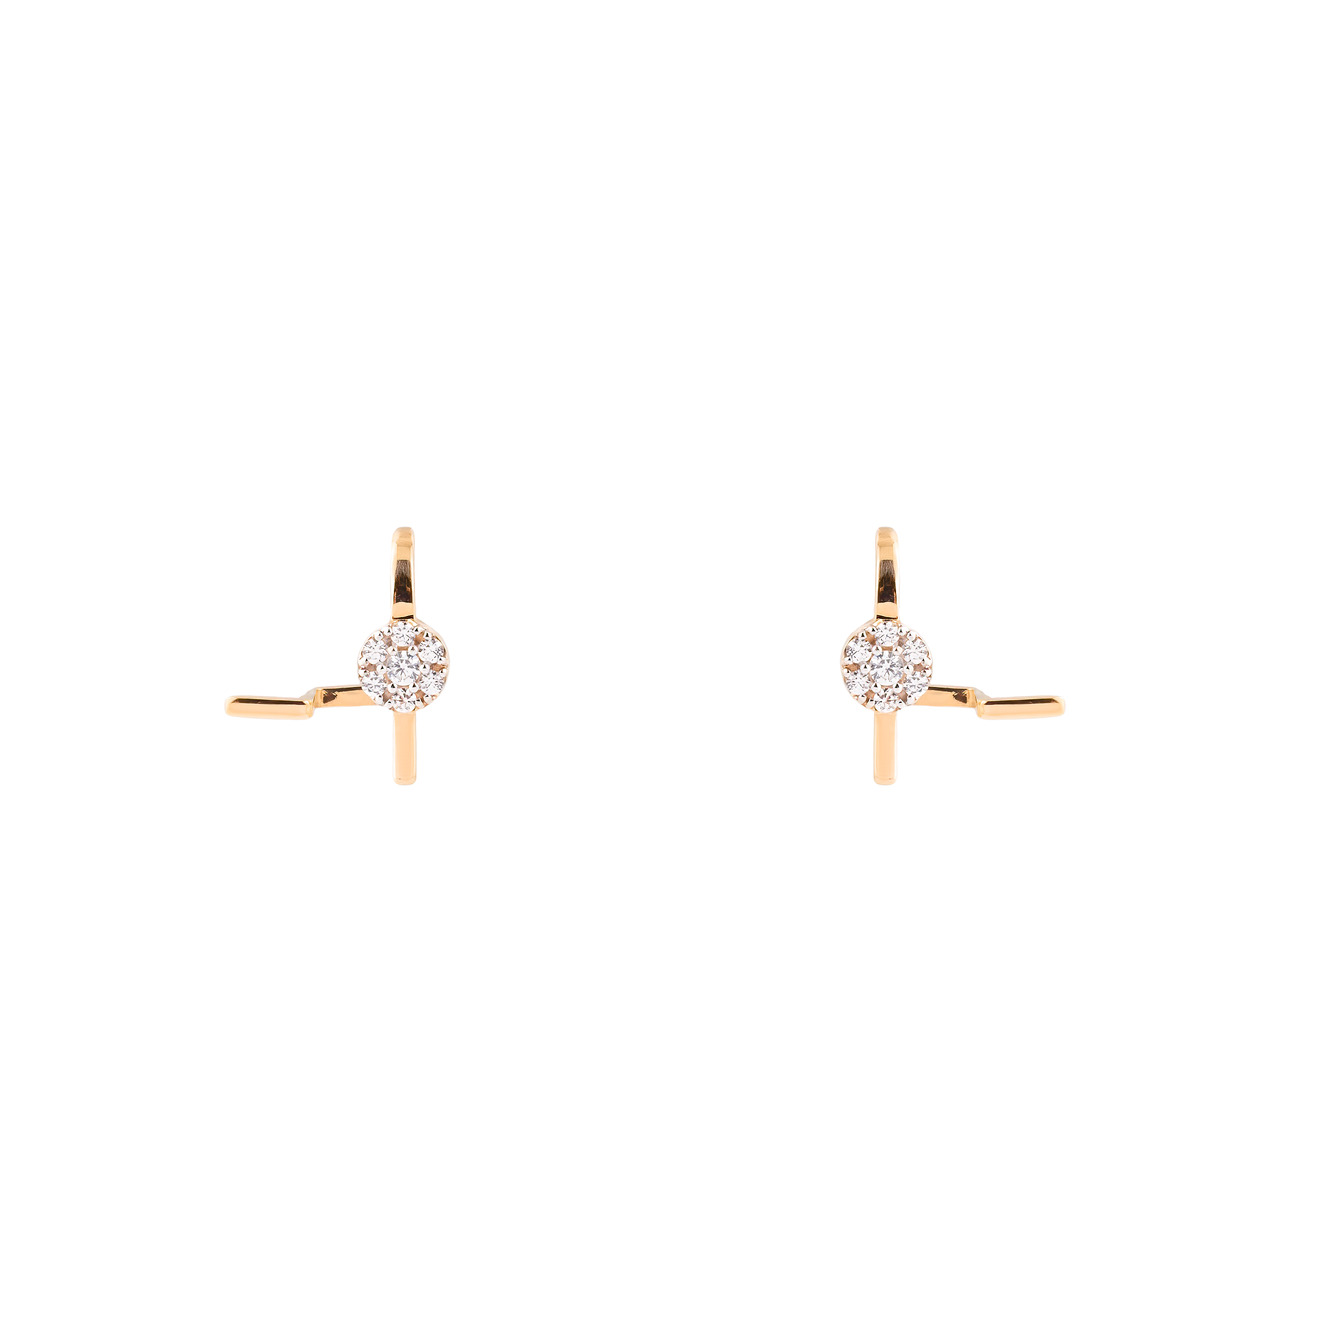 Herald Percy Diamonds Золотые серьги-клаймберы с крупным кристаллом herald percy кольцо с крупным кристаллом